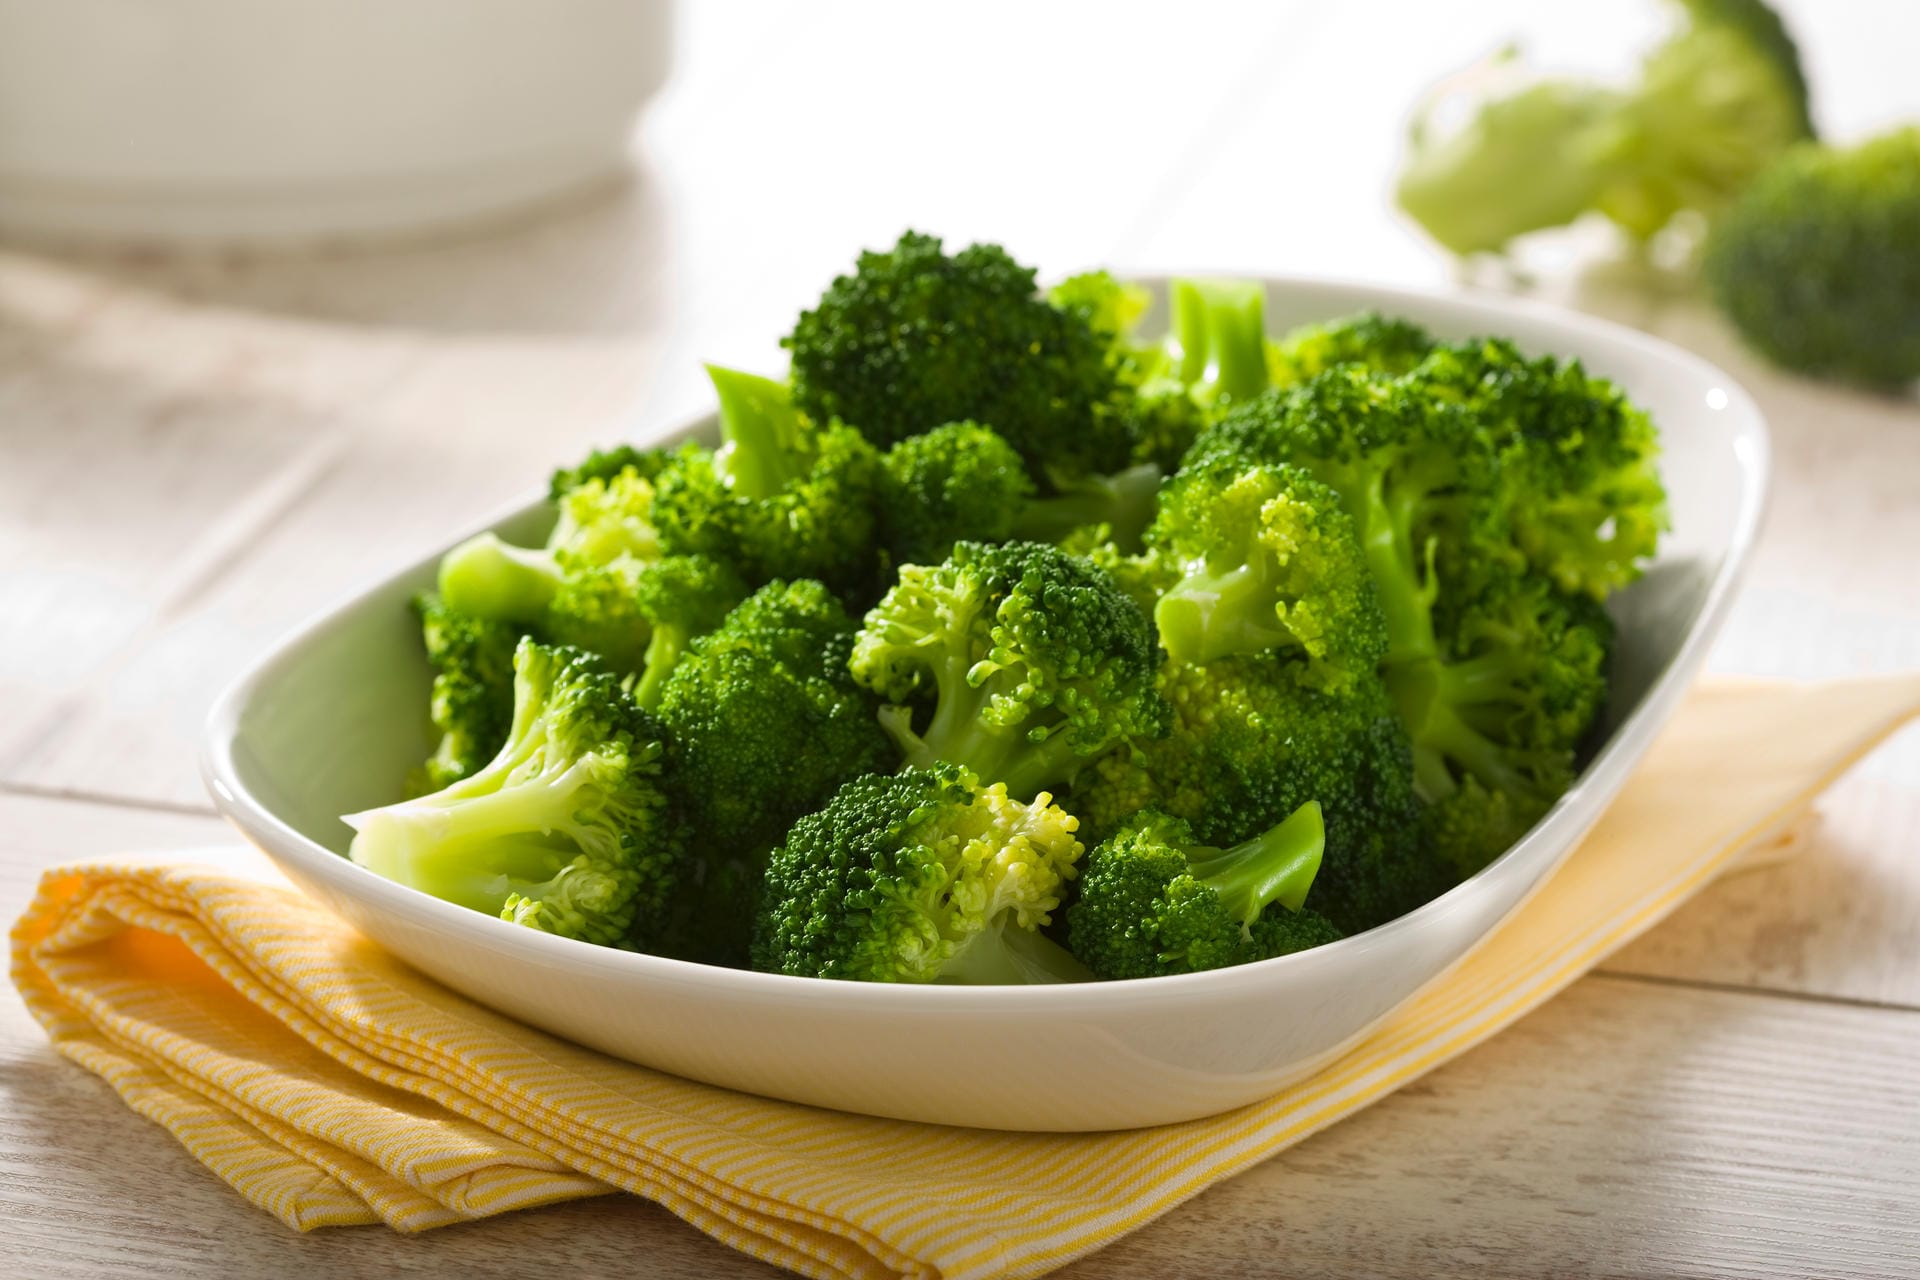 Brokkoli: Das grüne Gemüse ist reich an schützenden Polyphenolen und beugt vermutlich sogar Krebserkrankungen vor. Zudem enthält es beträchtliche Mengen an Folsäure – einem B-Vitamin, an dem es den Deutschen häufig mangelt. Ähnlich wertvoll sind Grünkohl, Rosenkohl, Mangold und Weißkohl.